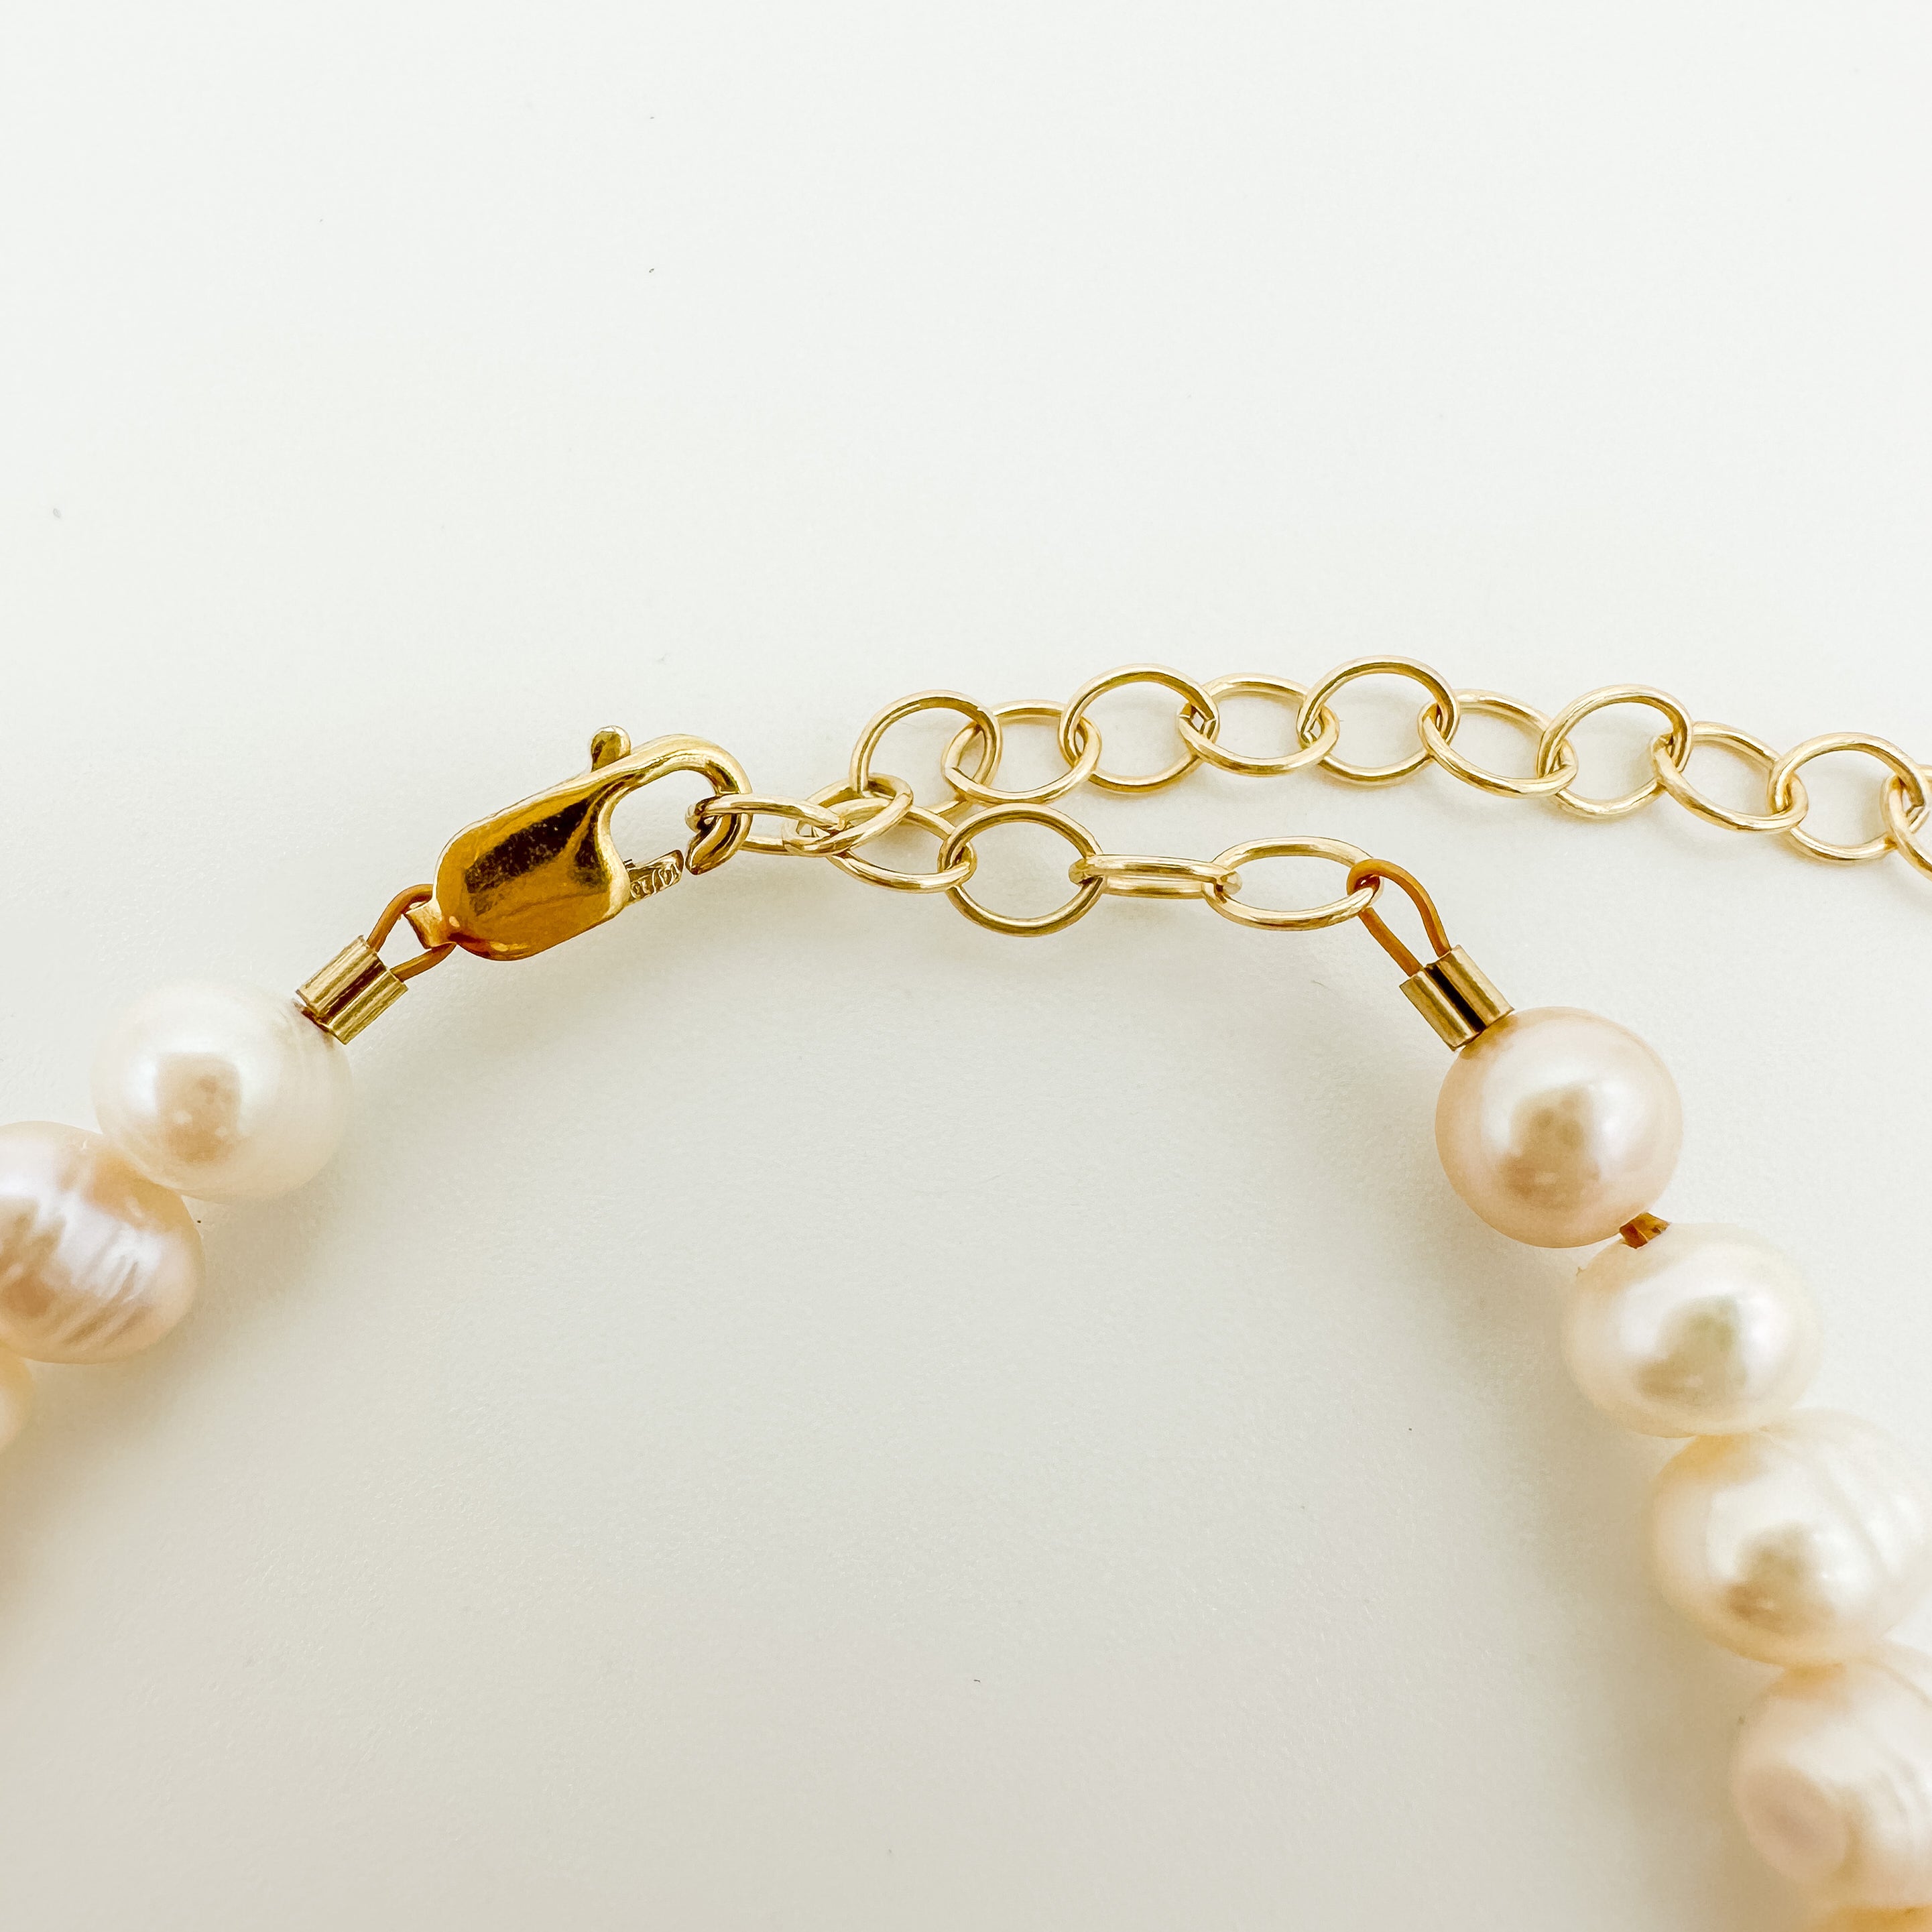 freshwater pearl bracelet / pearl beaded bracelet / adjustable pearl bracelet / modern pearl bracelet / freshwater pearls